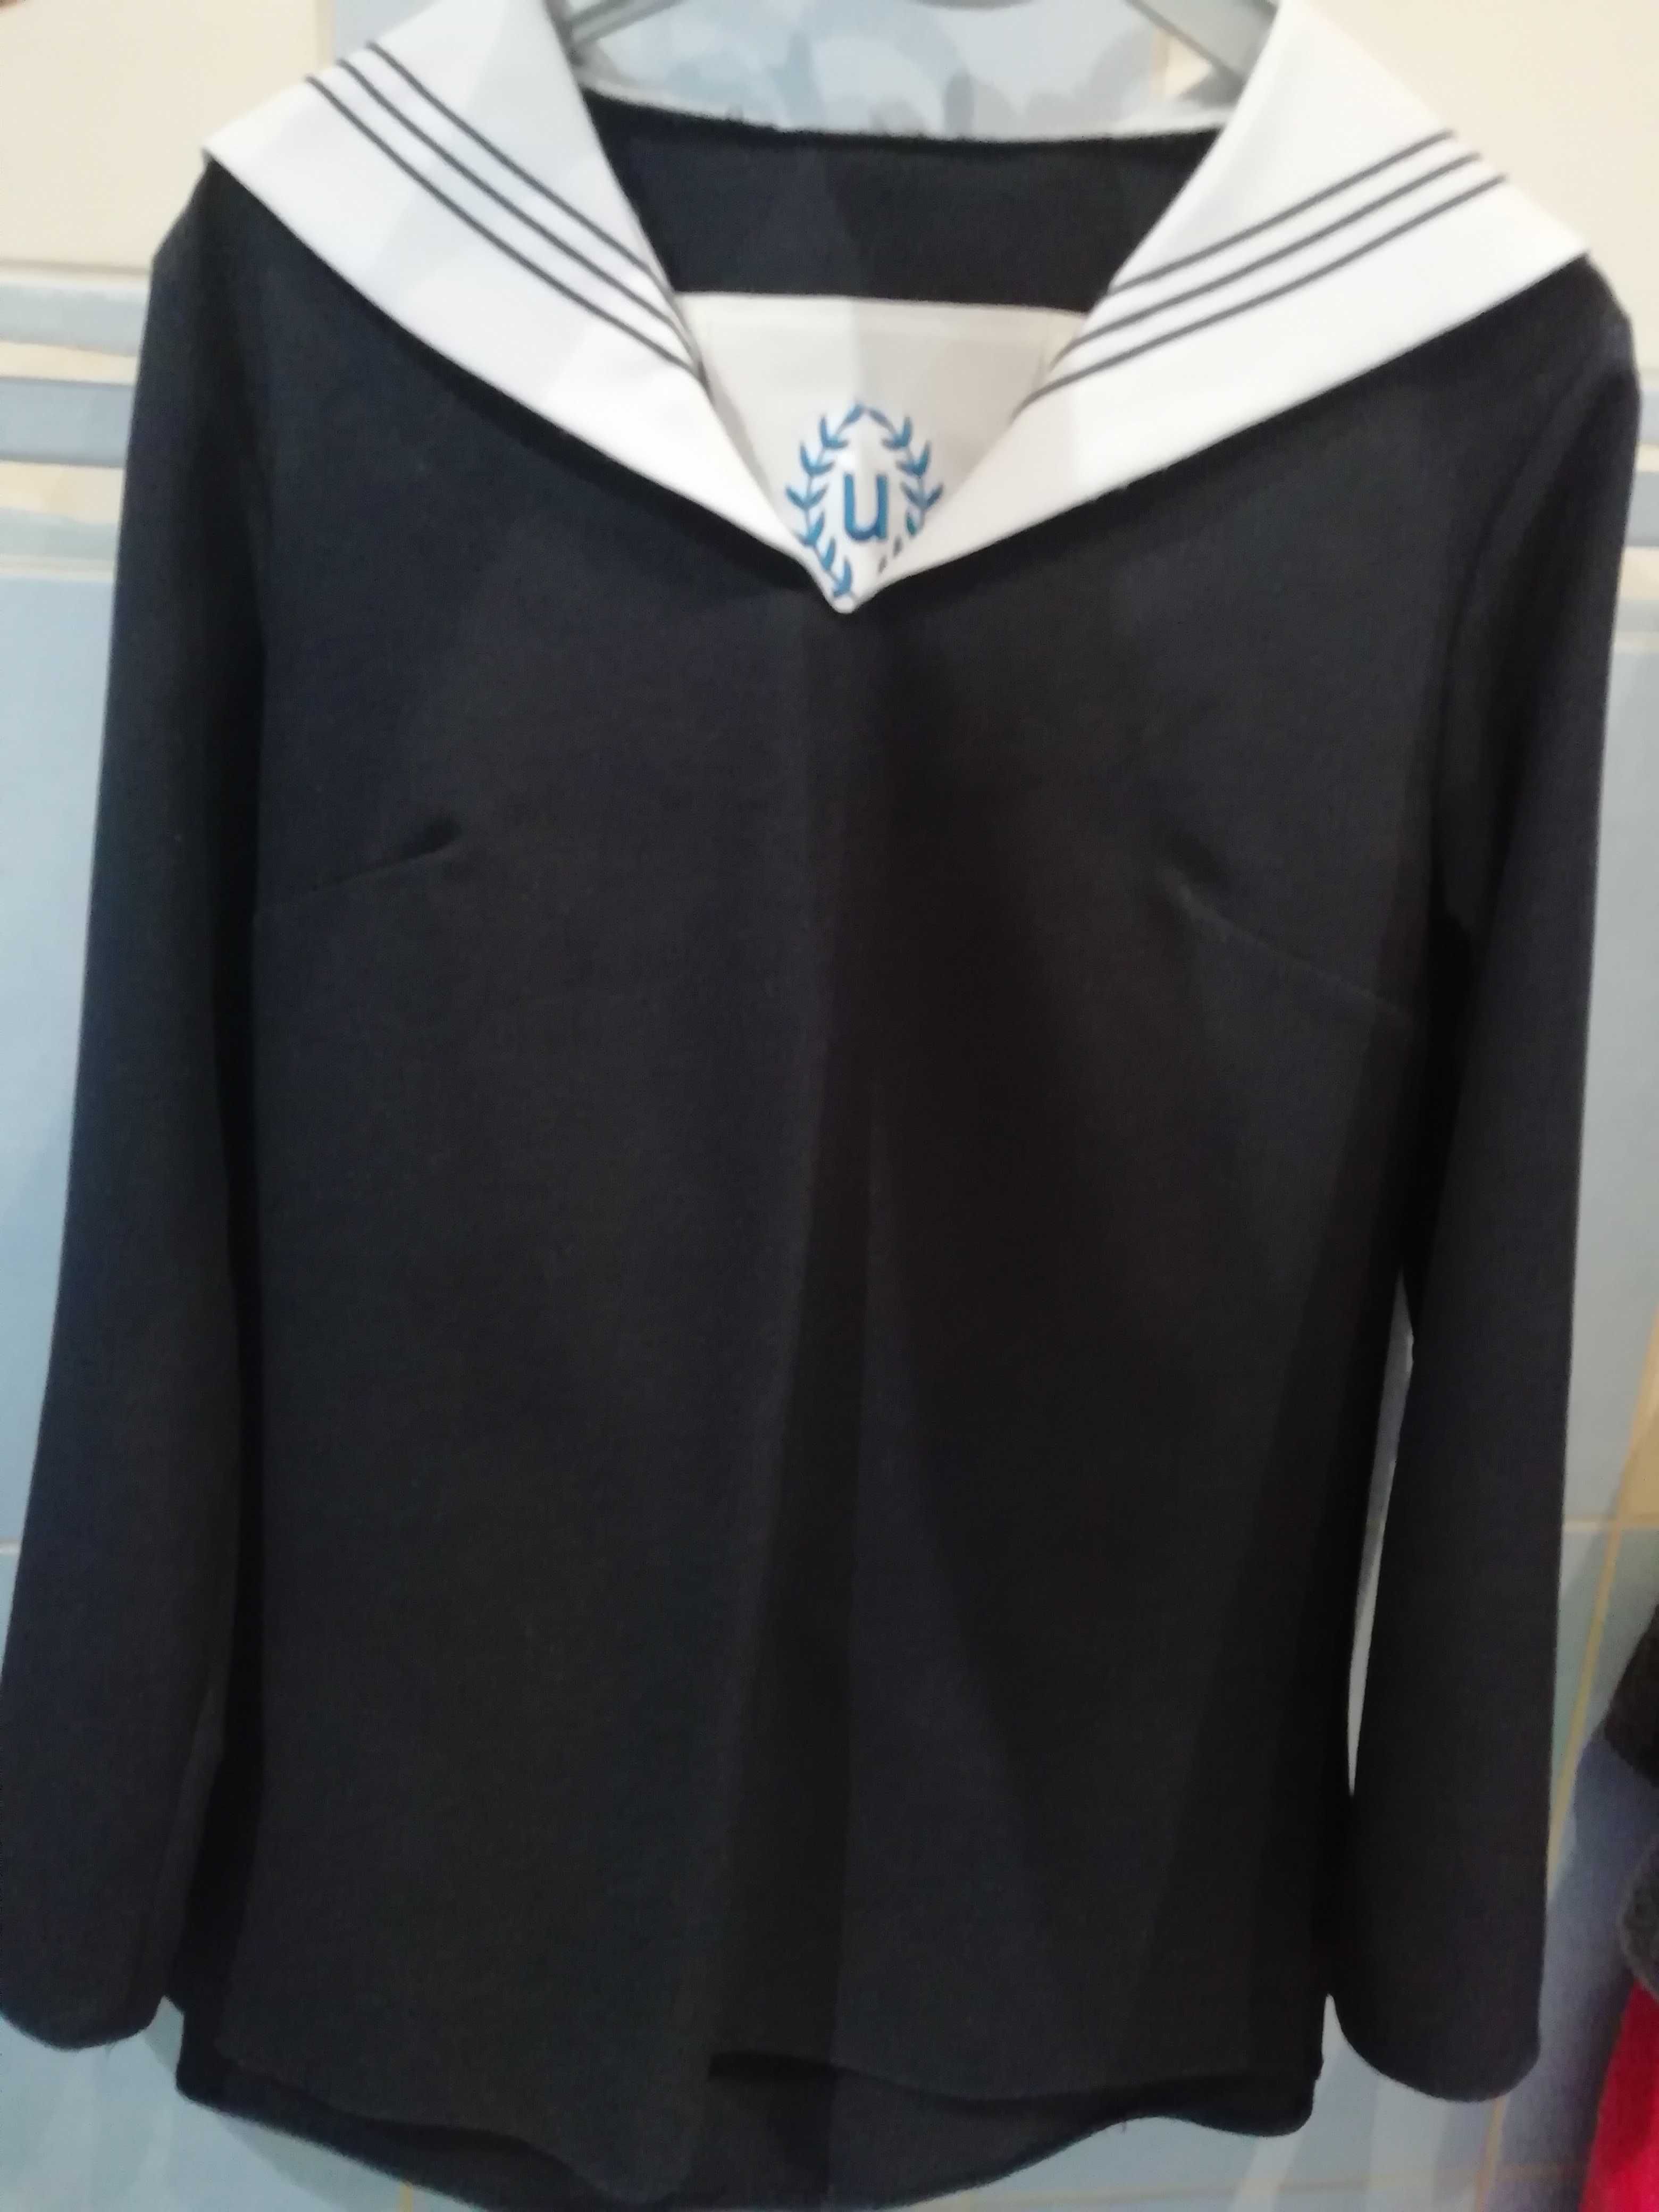 Galowy mundurek szkolny Urszulanki